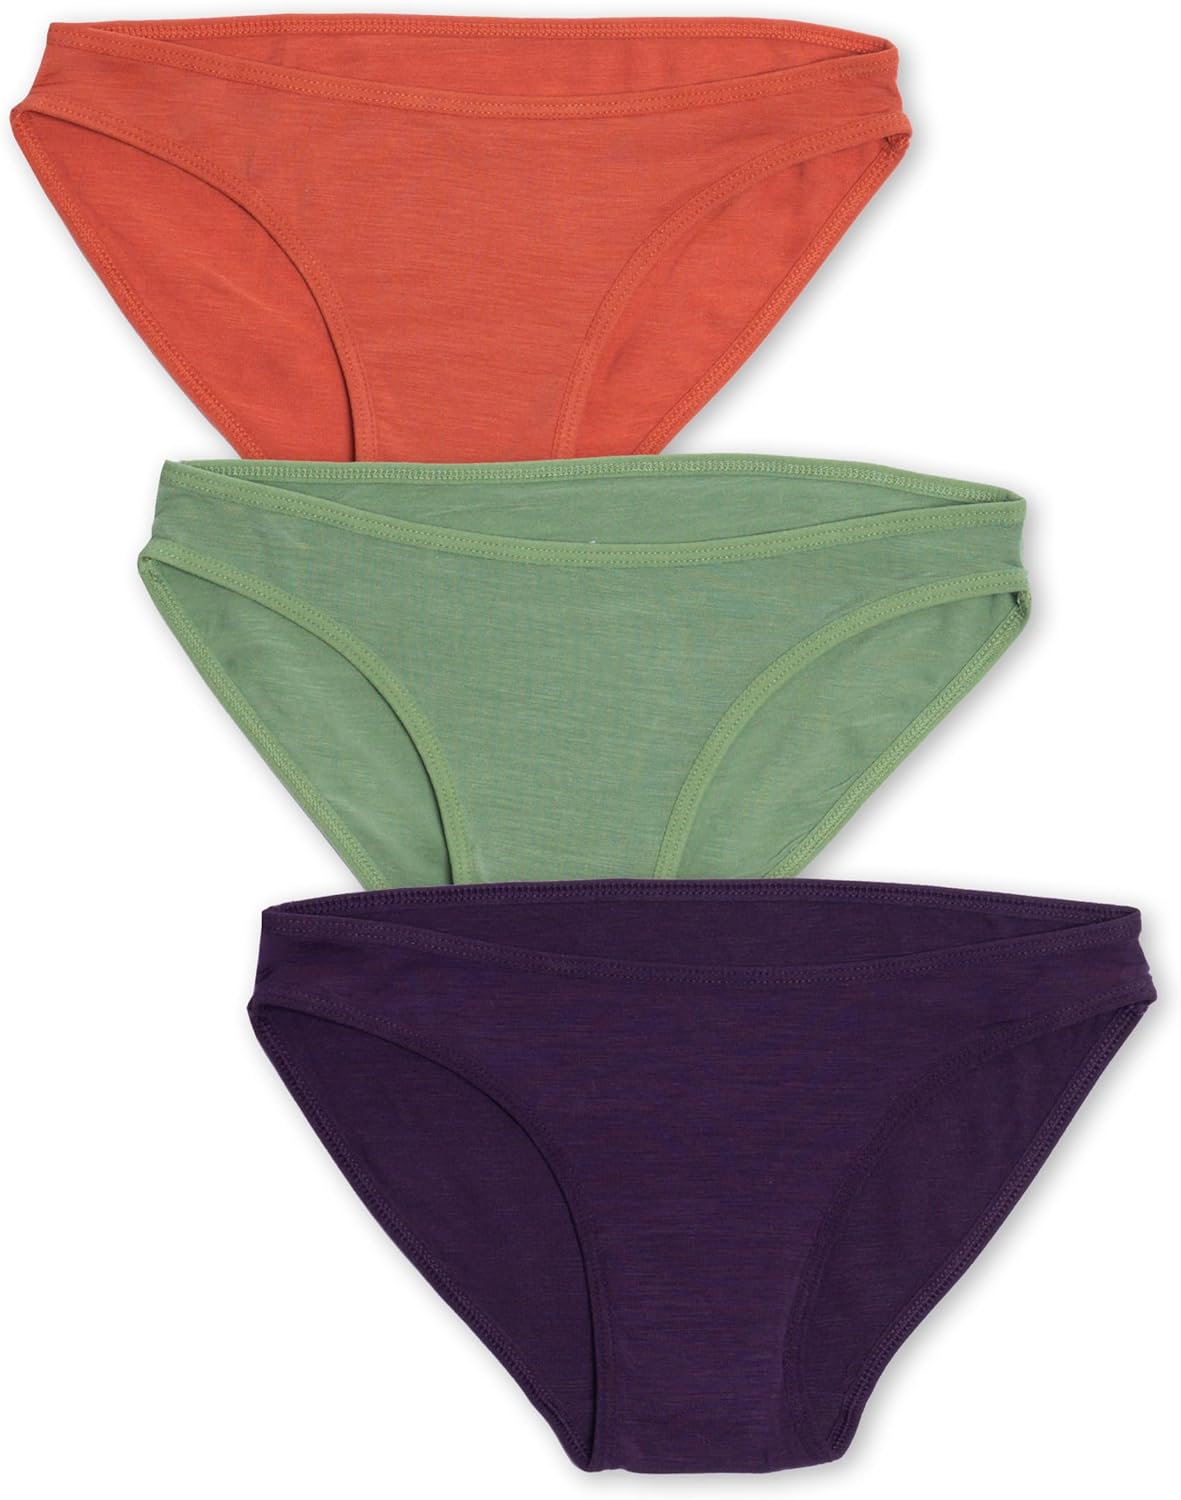 Women's Underwear – Woolly Clothing Co